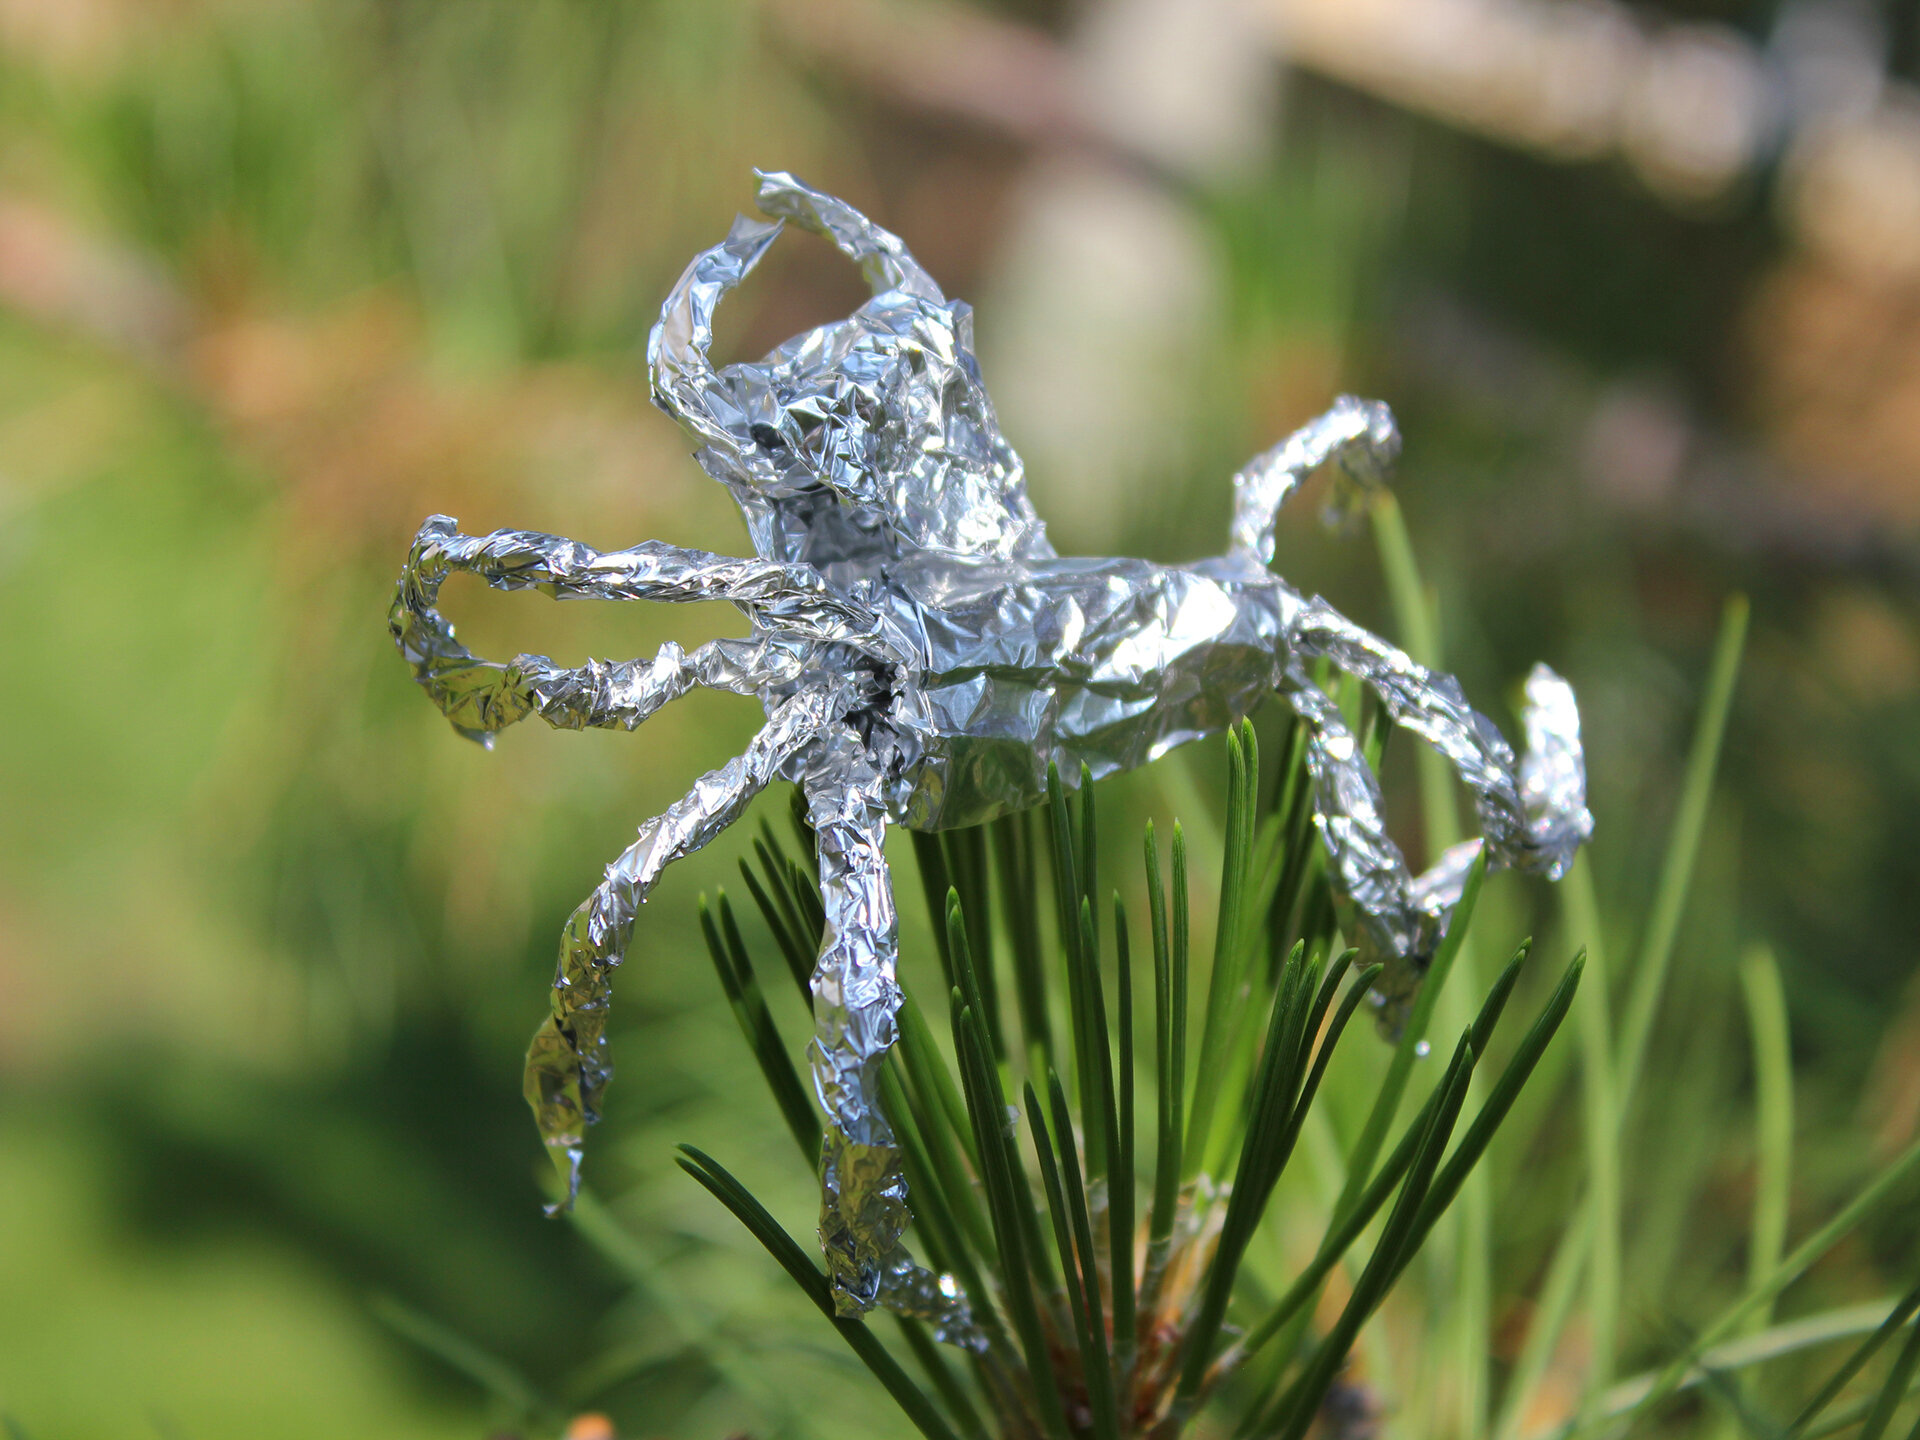 Tin Foil Spider On Leaf 03